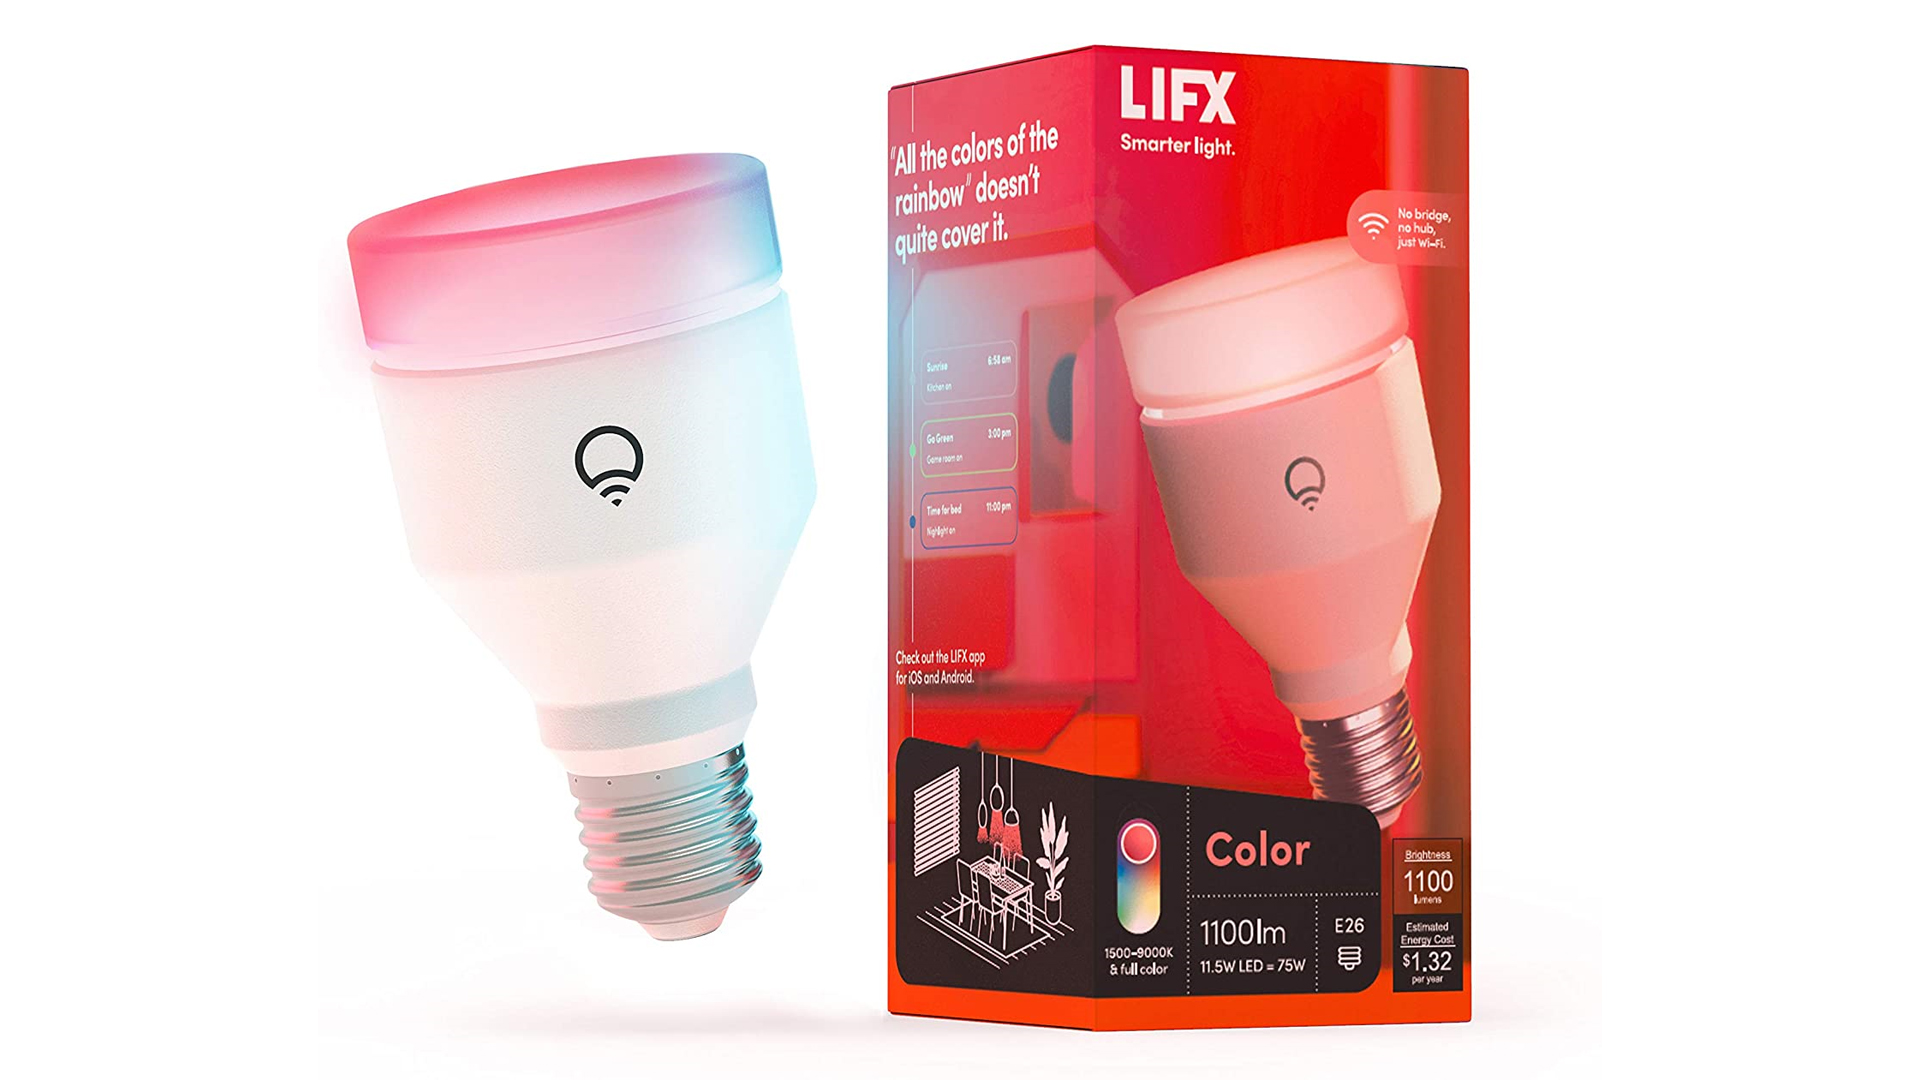 Bola lampu Lifx Color 1100 lumen